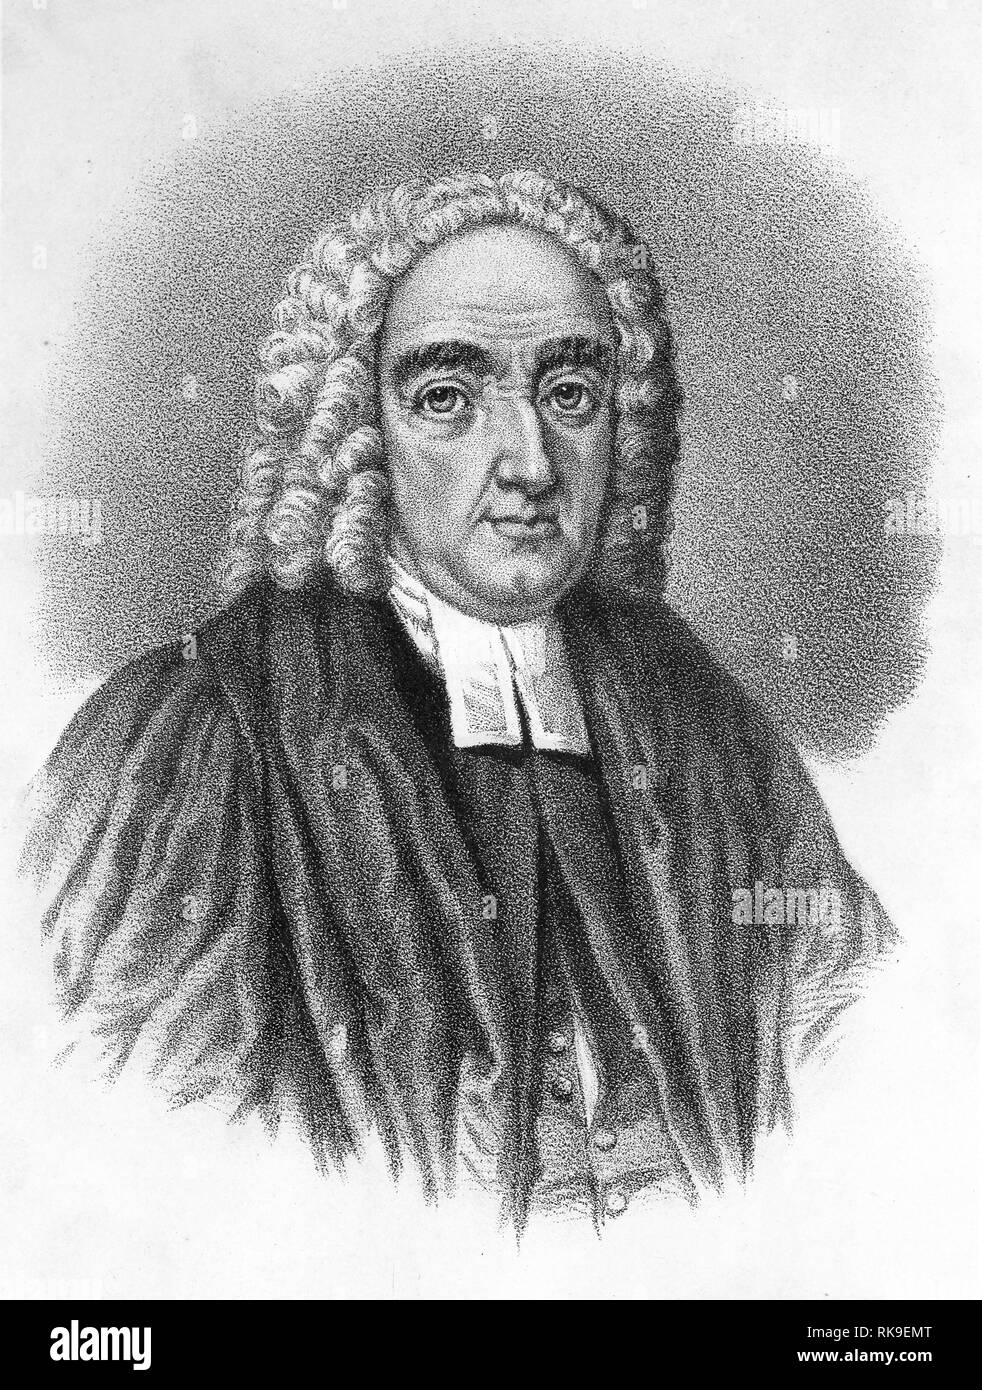 Gravieren von Jonathan Swift (1667 - 1745) ein anglo-irischen Satiriker, Essayist, politischen pamphleteer (zuerst für die Whigs, dann für die Tories), Dichter und Kleriker, Dekan der St. Patrick's Cathedral in Dublin wurde. Stockfoto